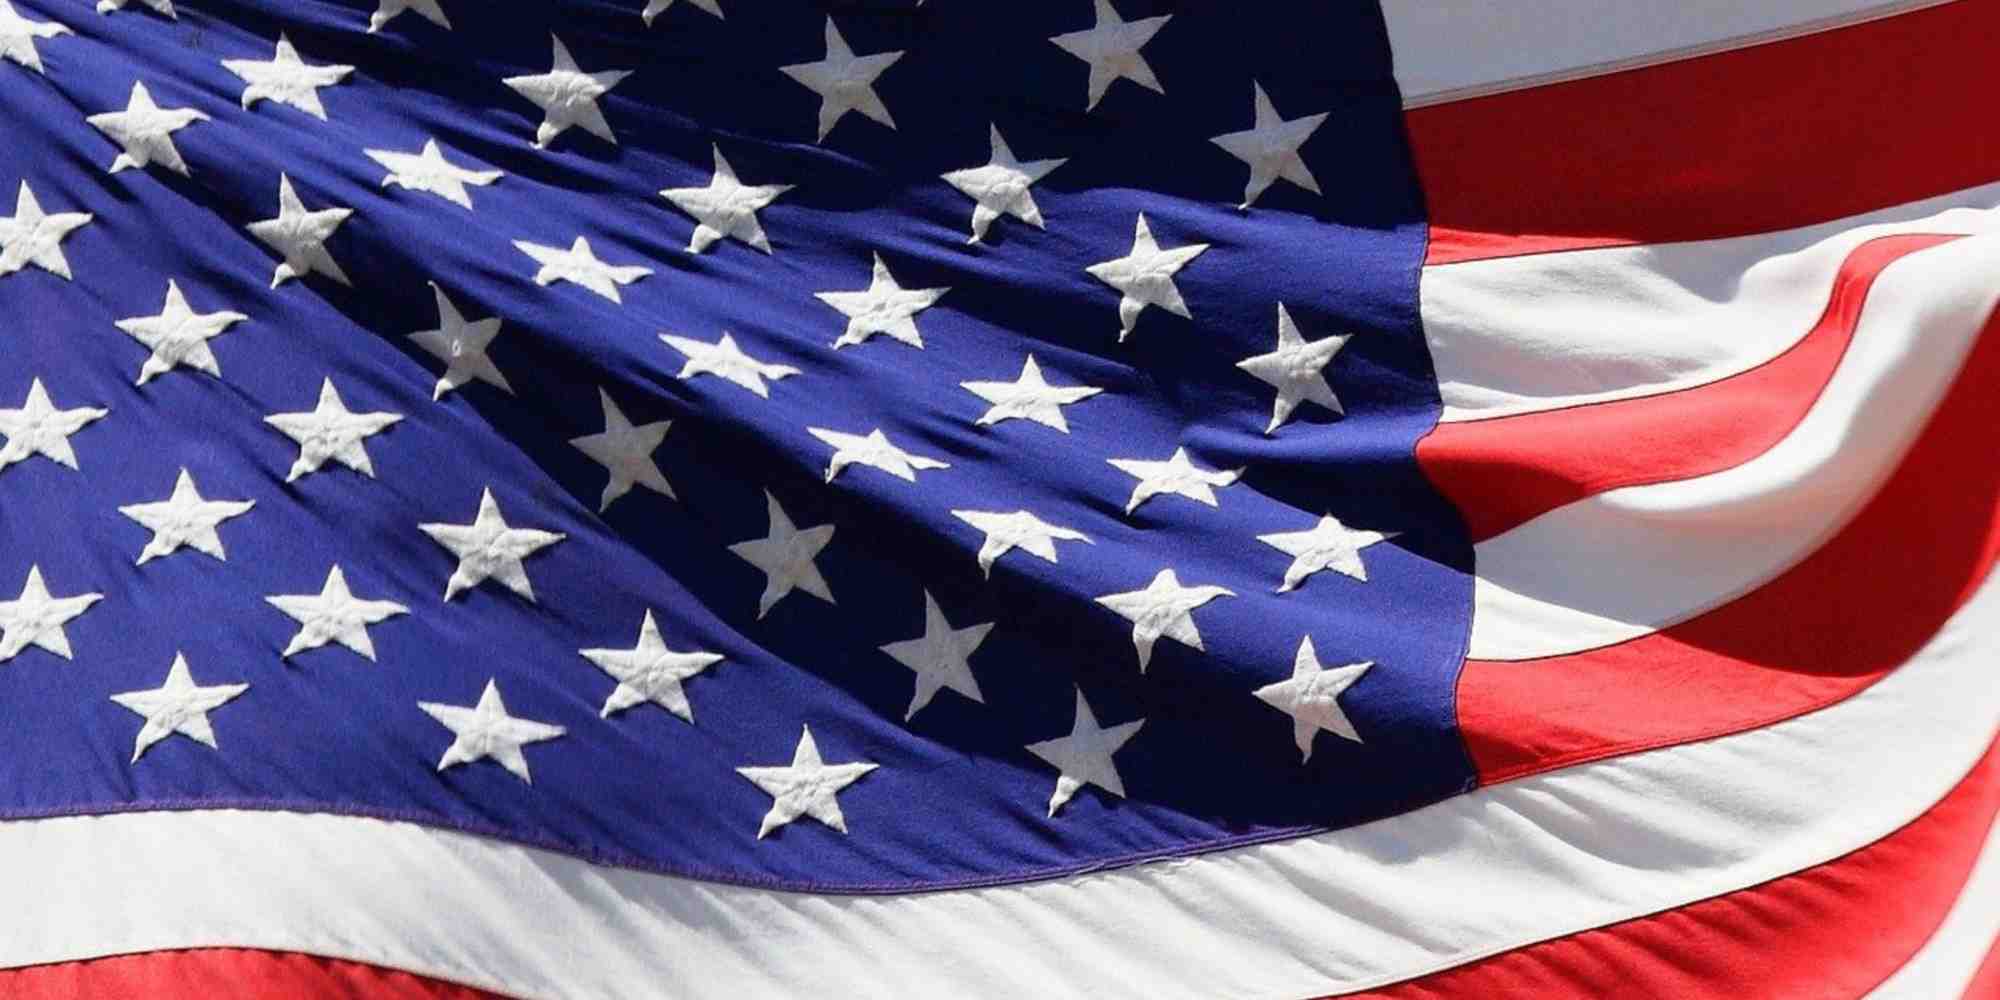 Quelle est la signification des couleurs du drapeau américain ?